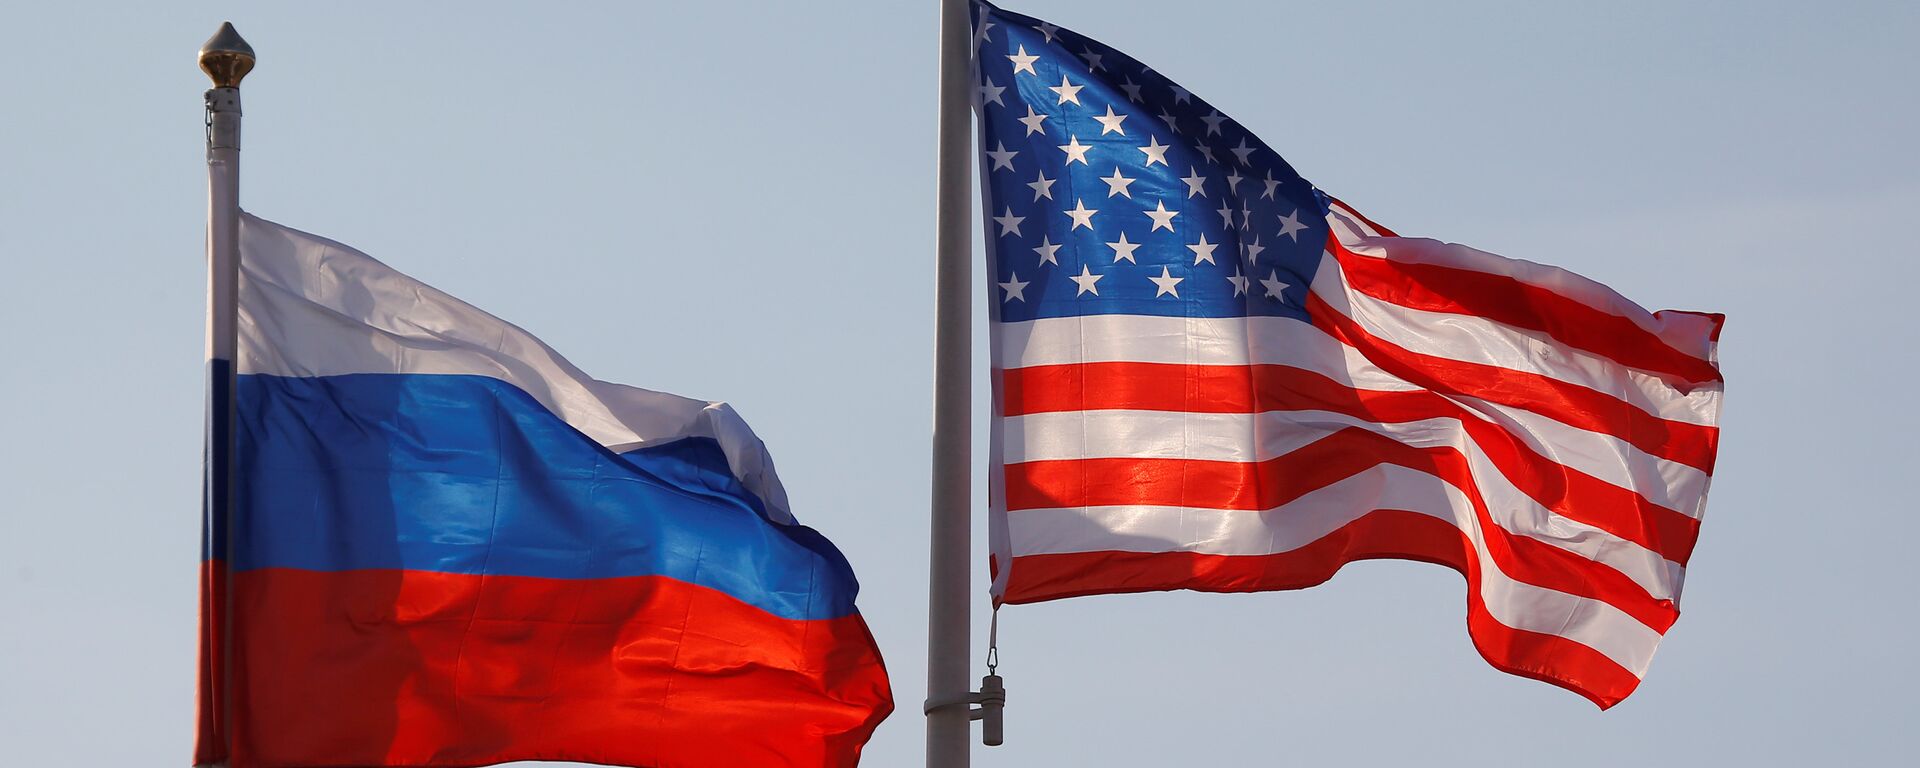 Banderas de Rusia y EEUU - Sputnik Mundo, 1920, 05.08.2019